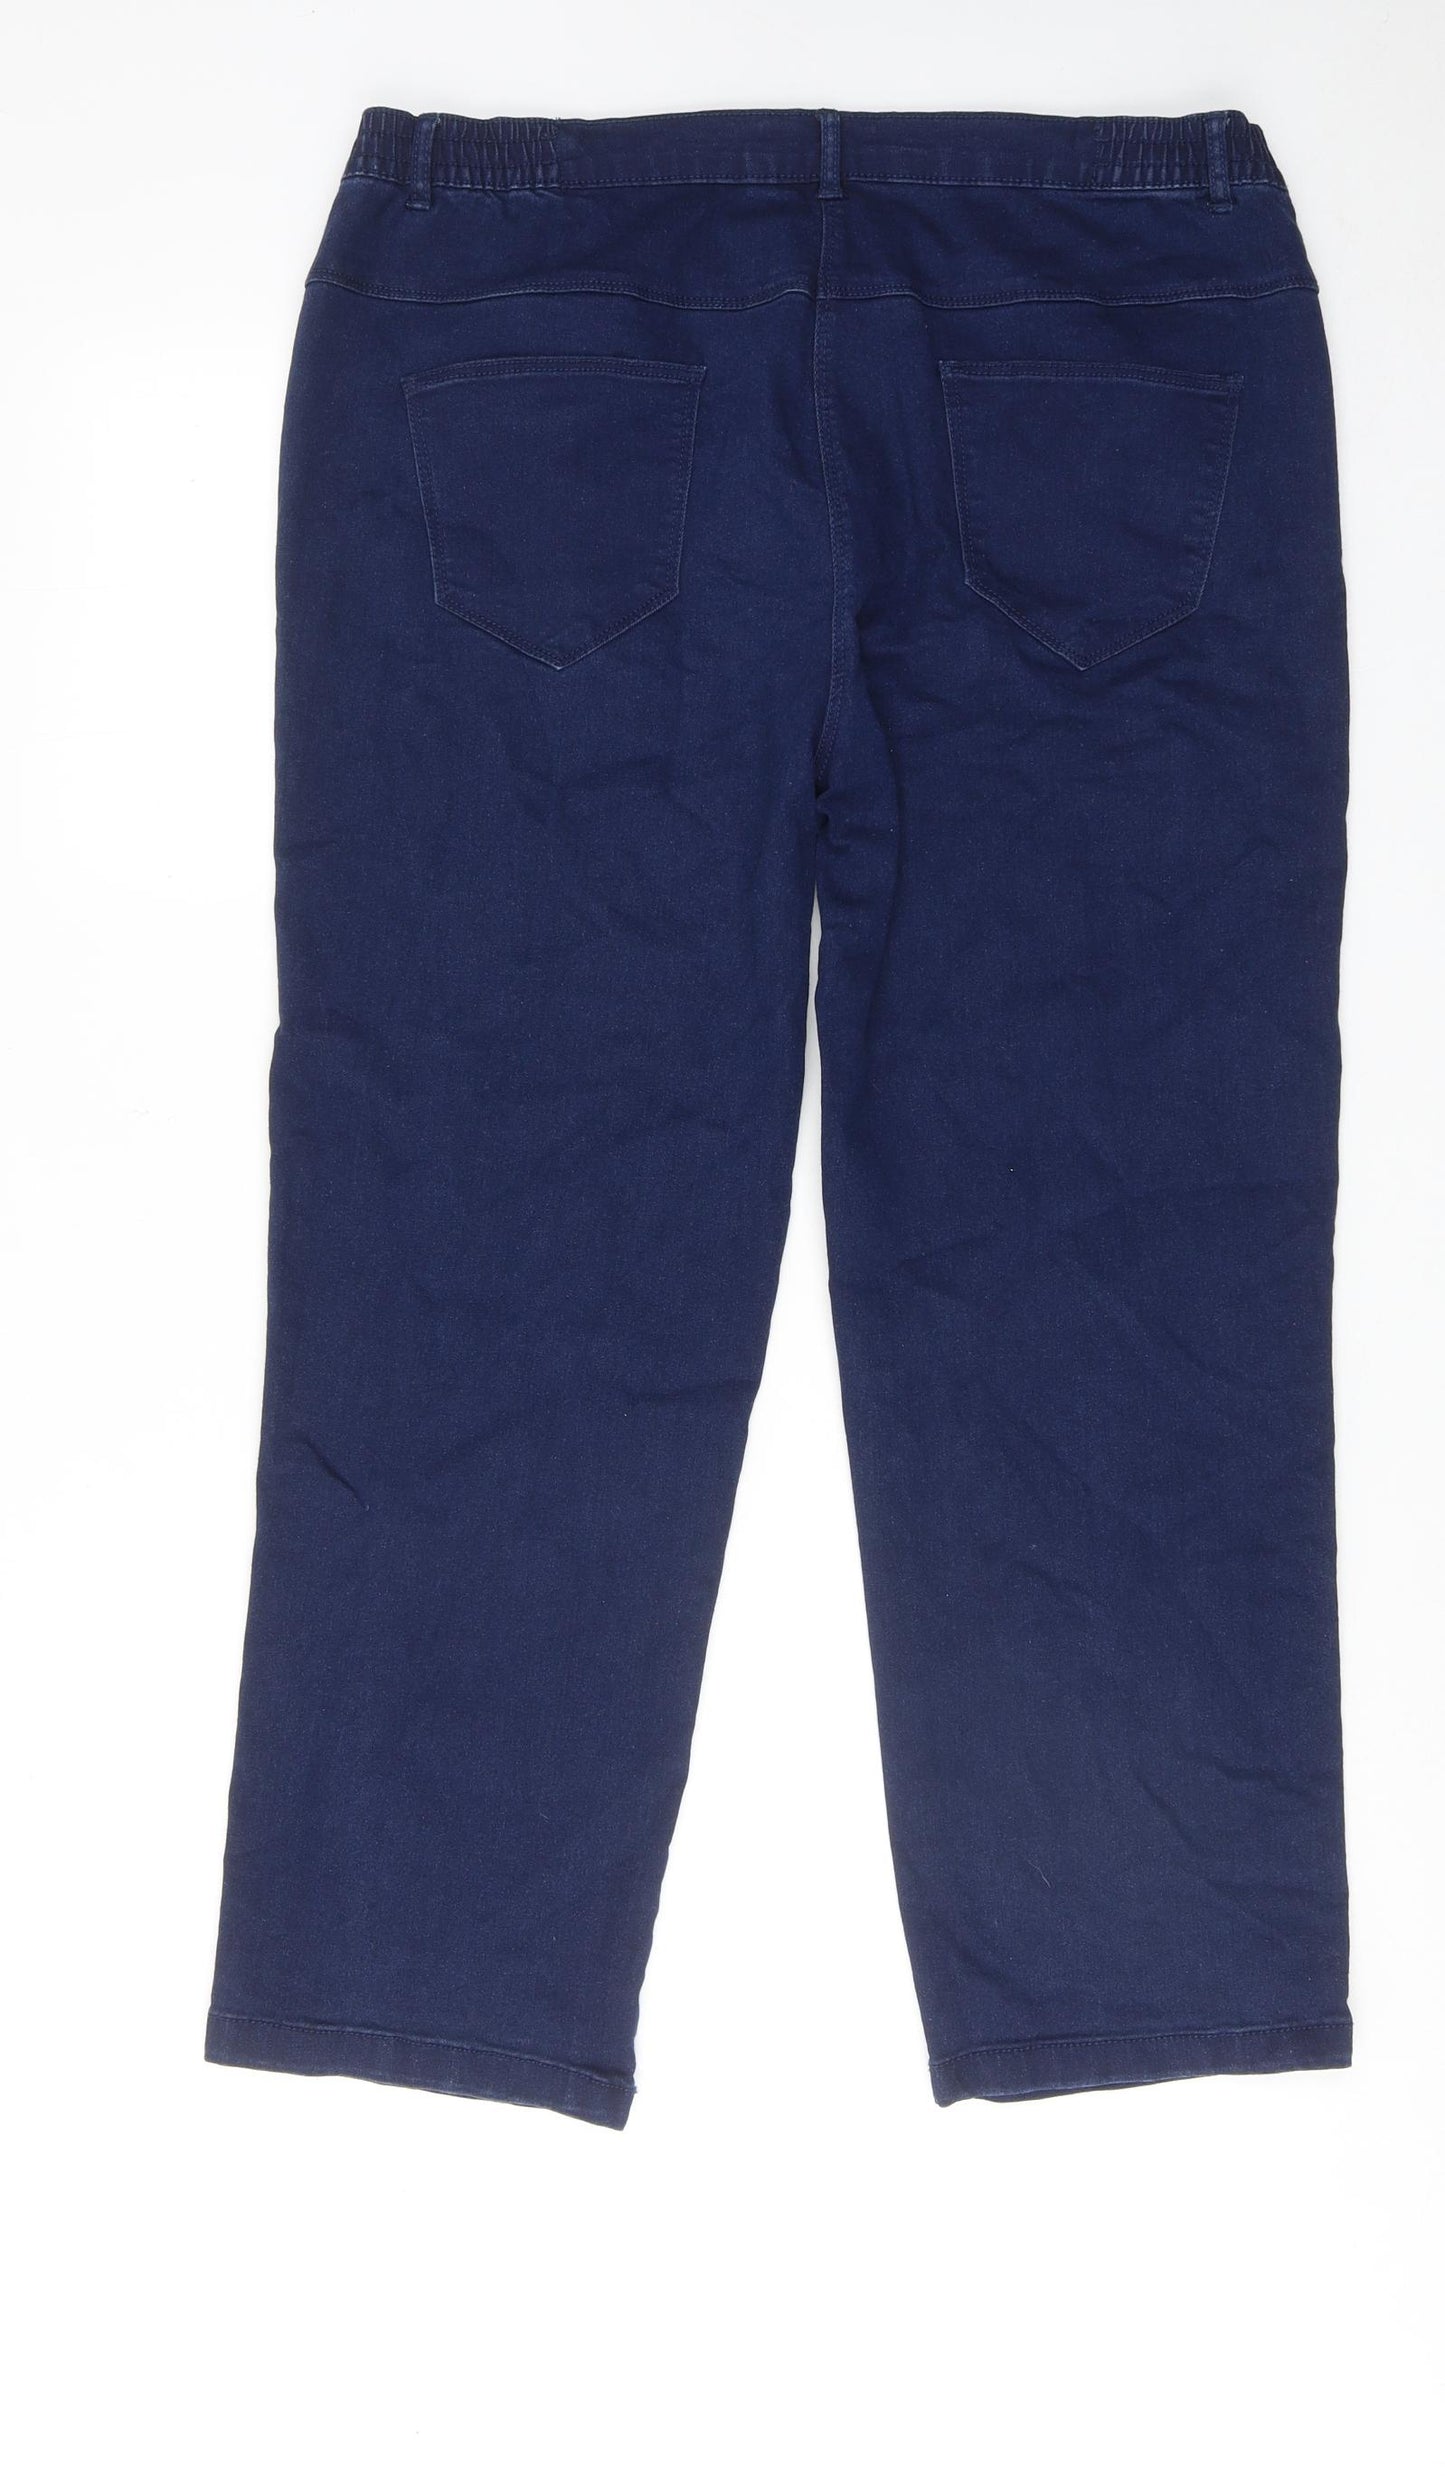 Bonmarché Womens Blue Cotton Straight Jeans Size 18 Regular Zip